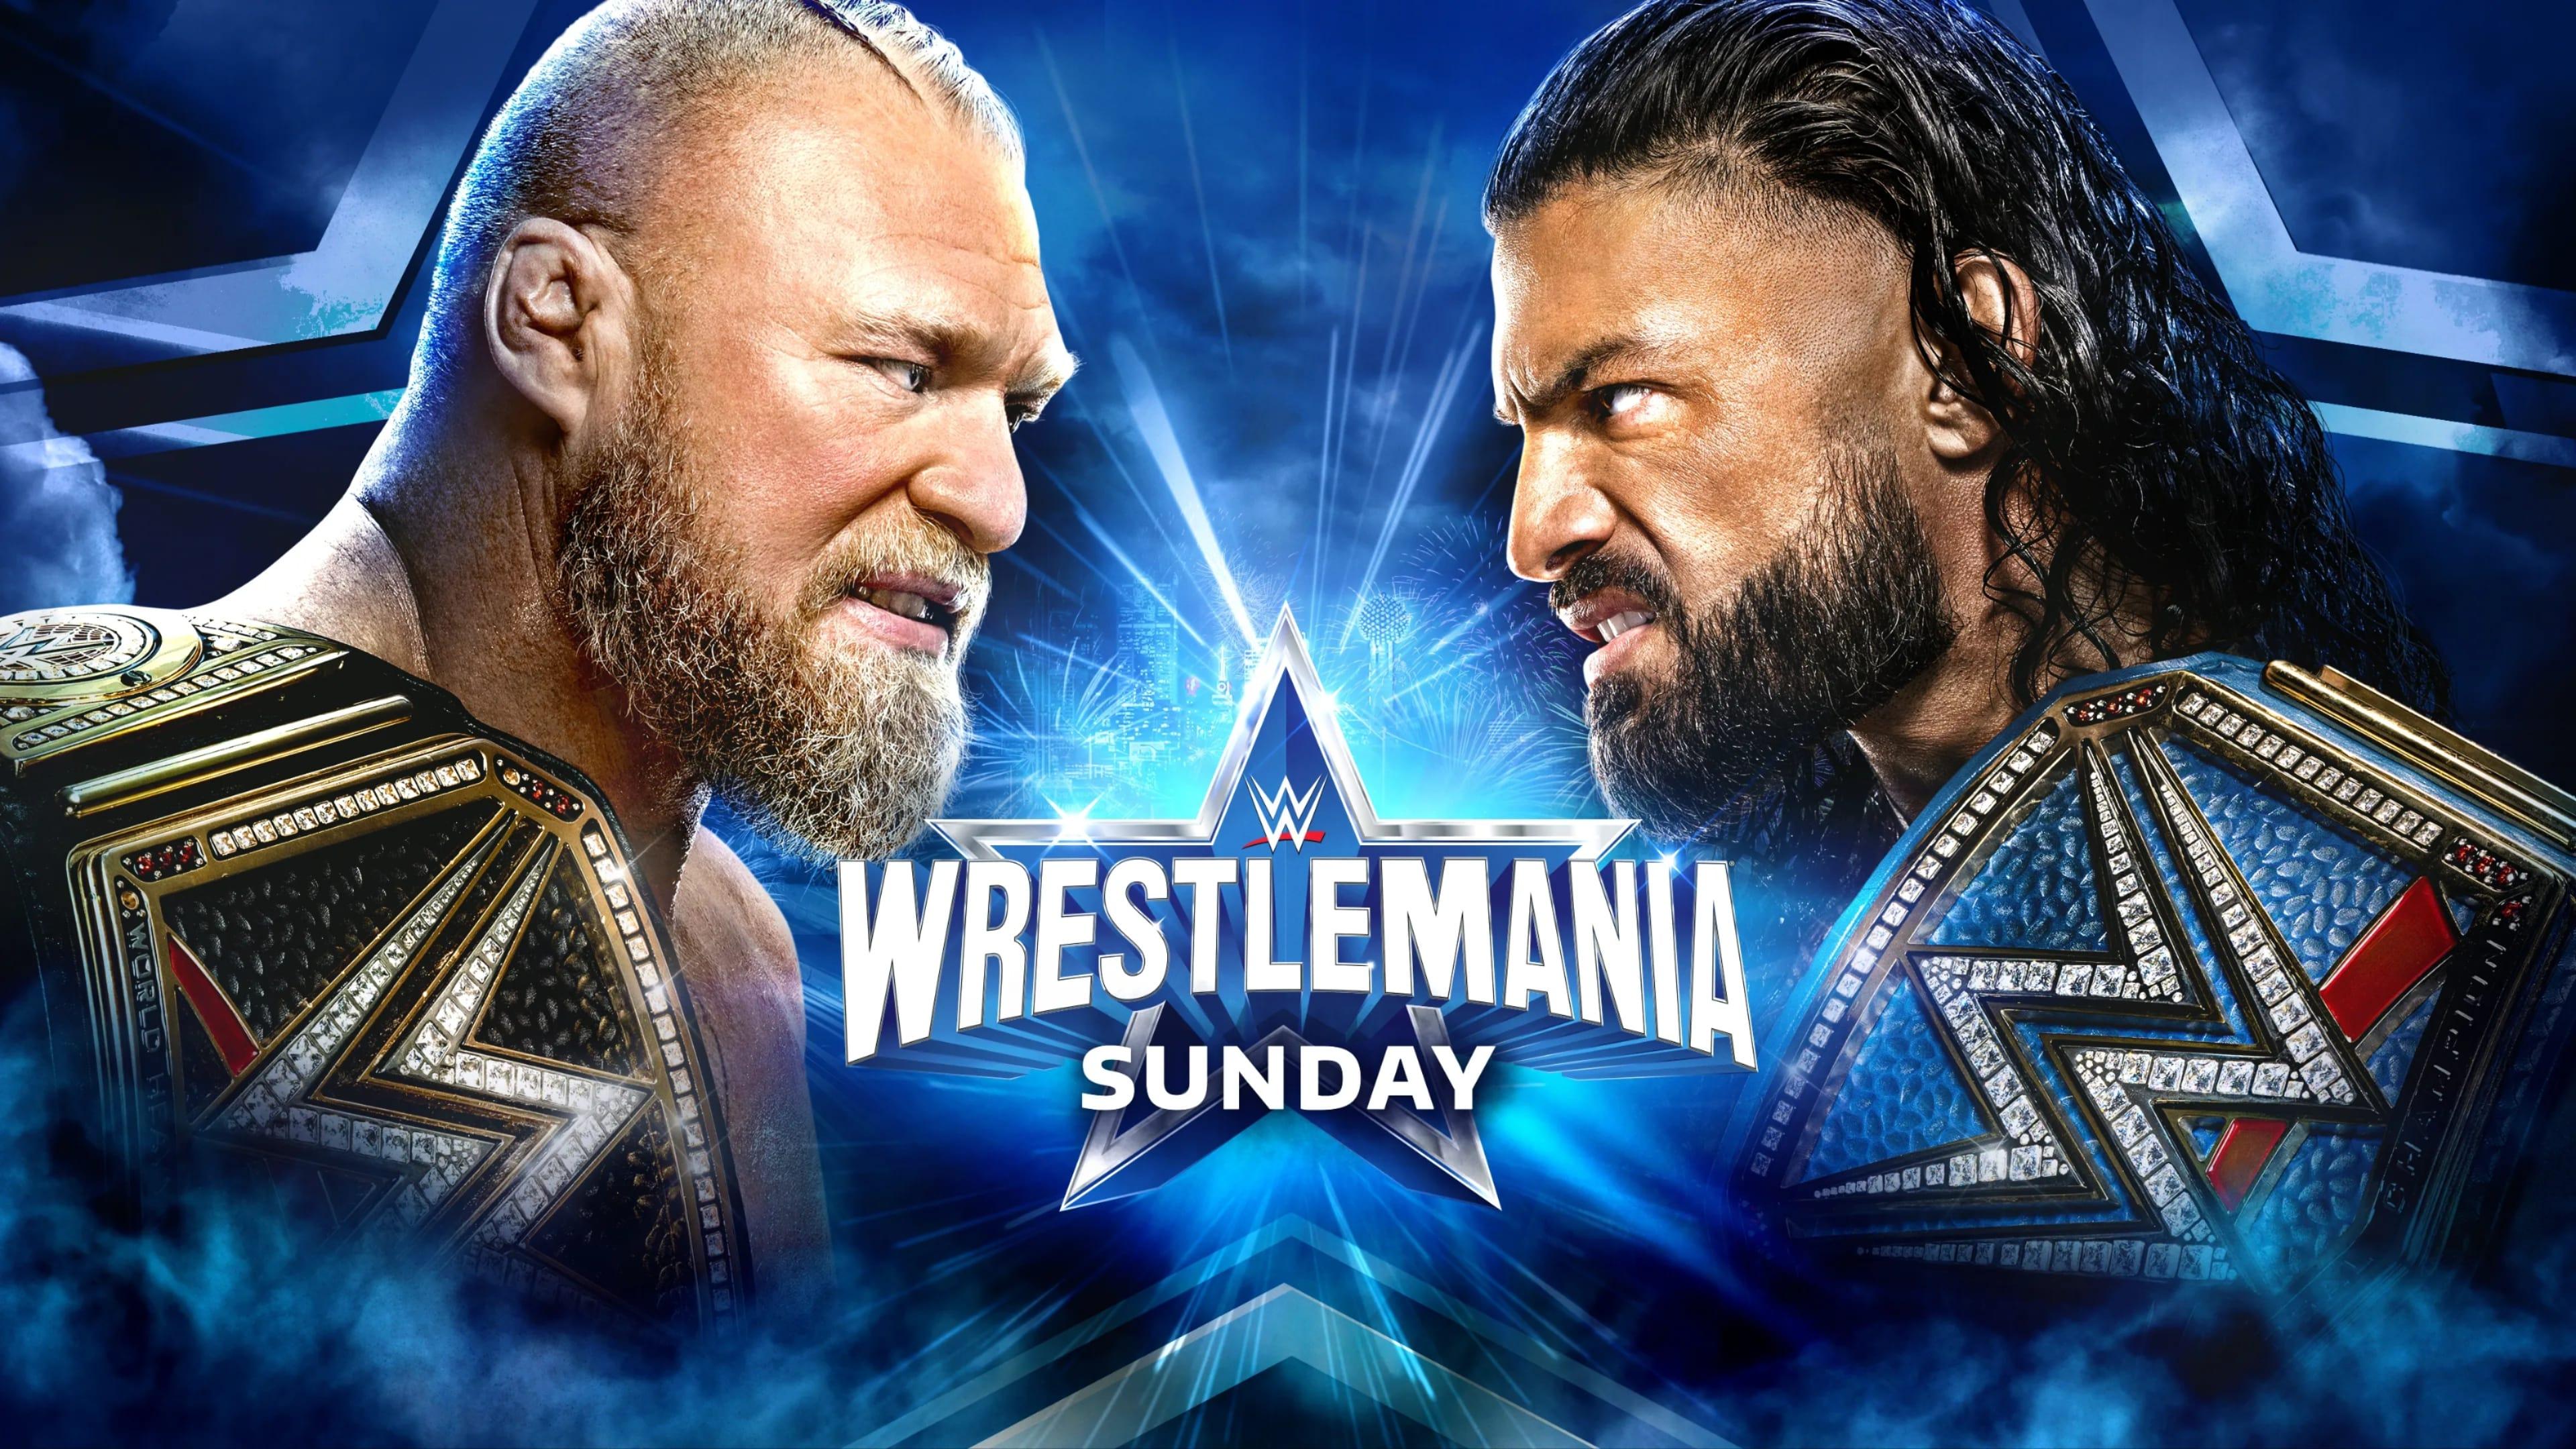 WWE WrestleMania 38 - Sunday backdrop